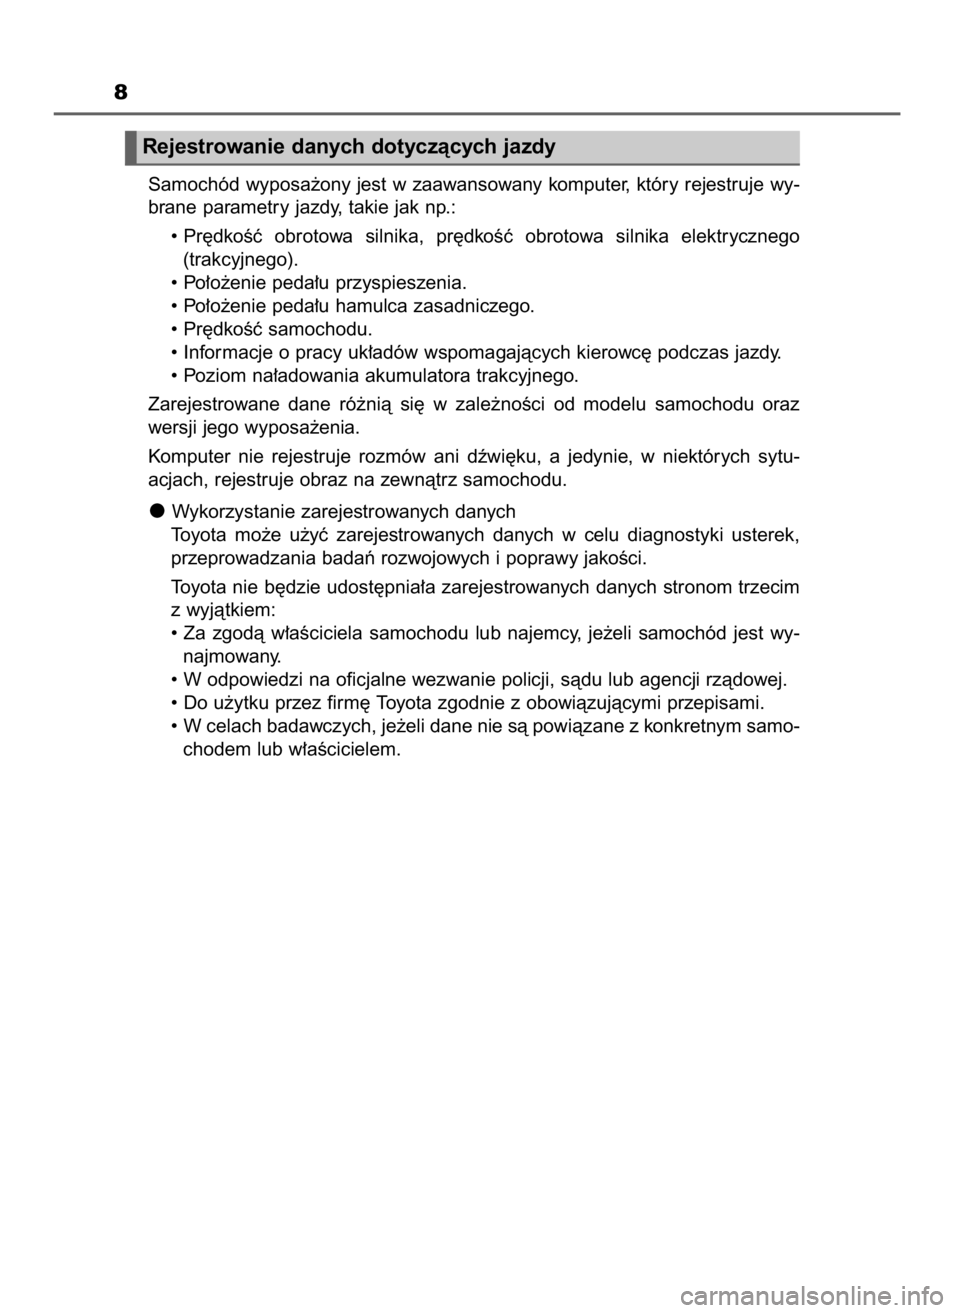 TOYOTA PRIUS 2019  Instrukcja obsługi (in Polish) 8
Samochód wyposa˝ony jest w zaawansowany komputer, który rejestruje wy-
brane parametry jazdy, takie jak np.:
• Pr´dkoÊç  obrotowa  silnika,  pr´dkoÊç  obrotowa  silnika  elektrycznego
(tr